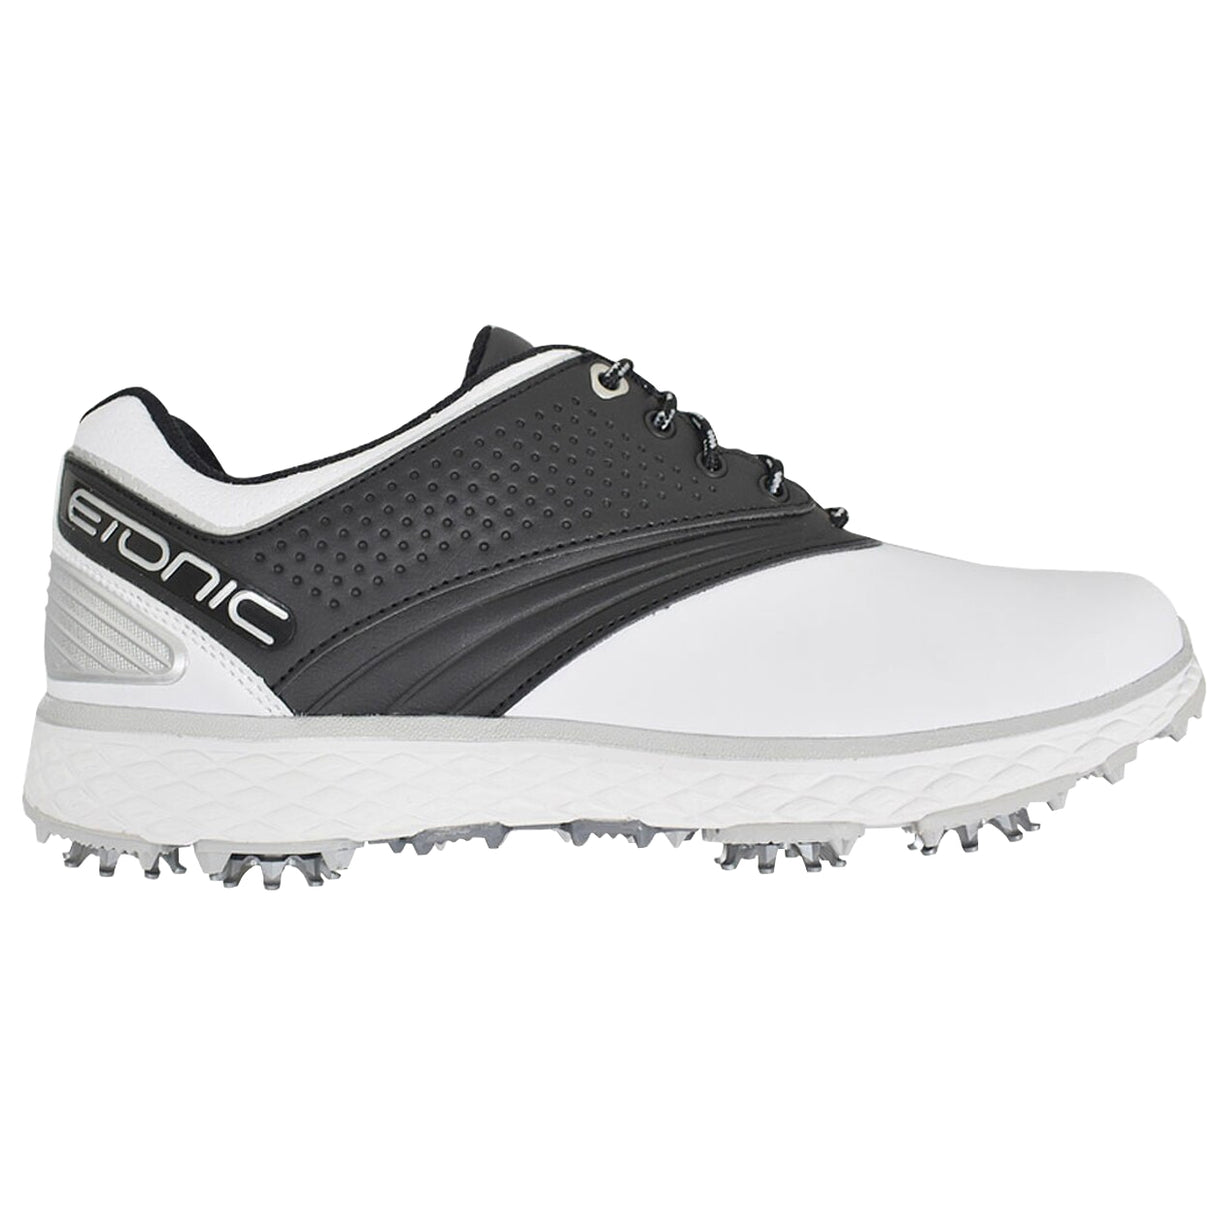 Etonic Difference 8-Spike Waterproof Men's Golf Shoe